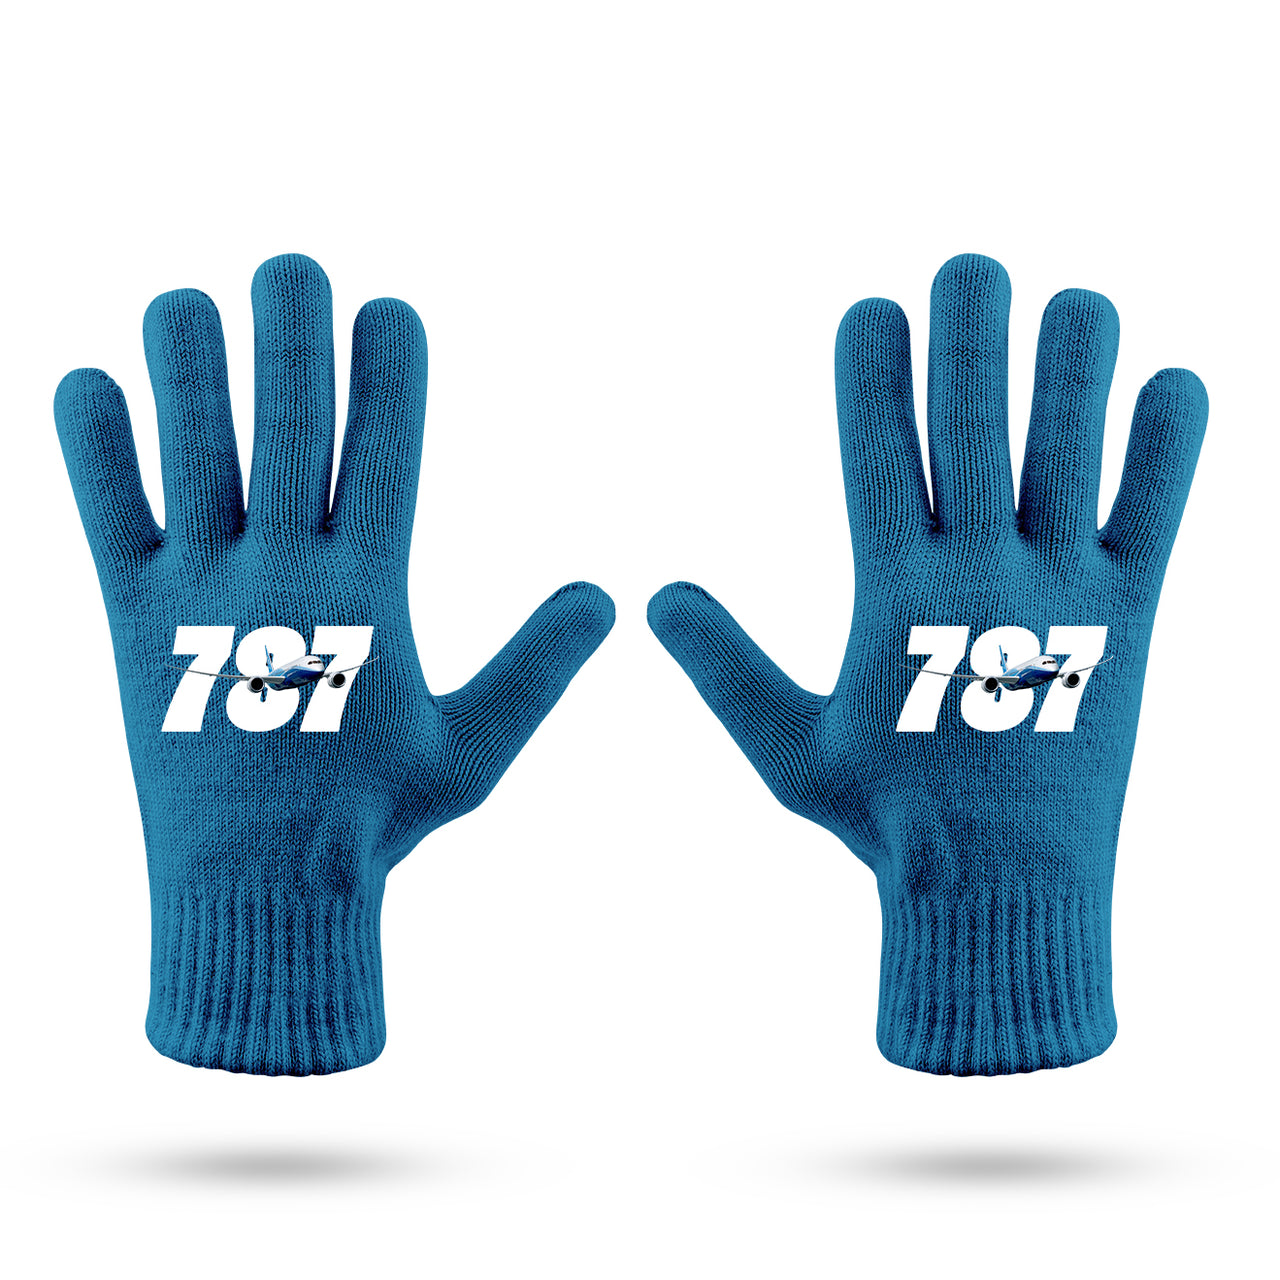 Super Boeing 787 Designed Gloves